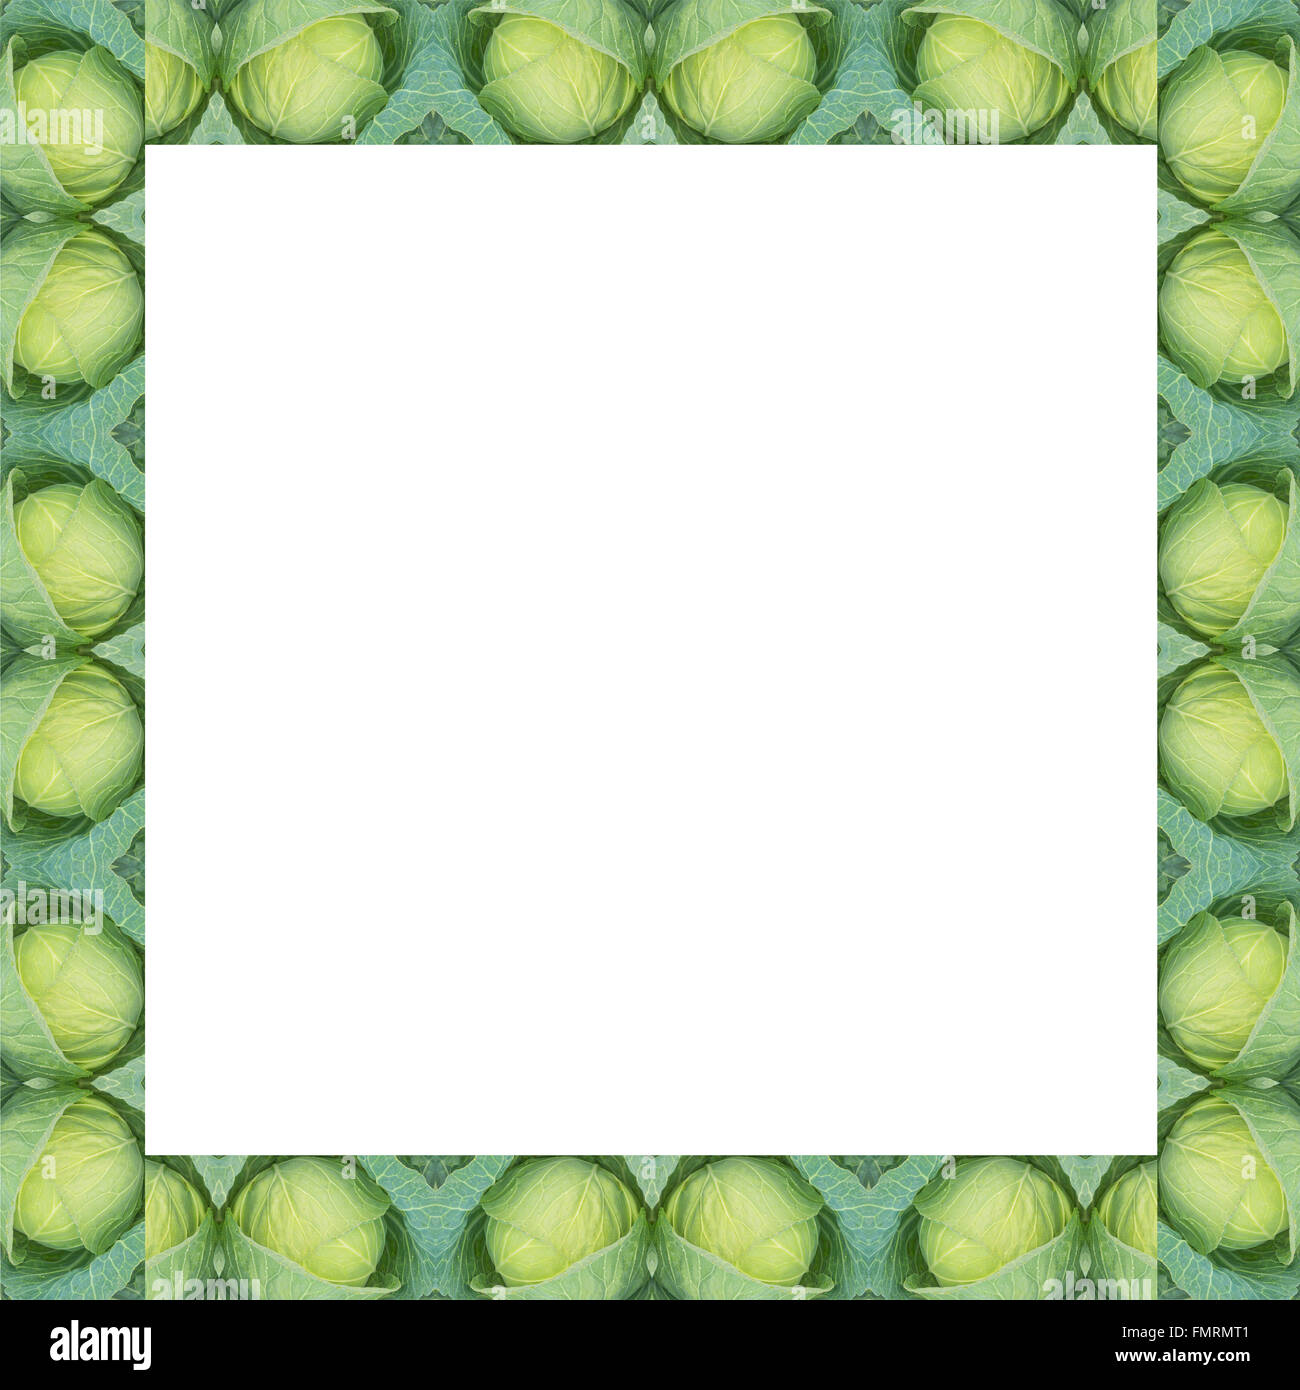 Grünkohl-Rahmen isoliert auf weißem Hintergrund Stockfoto